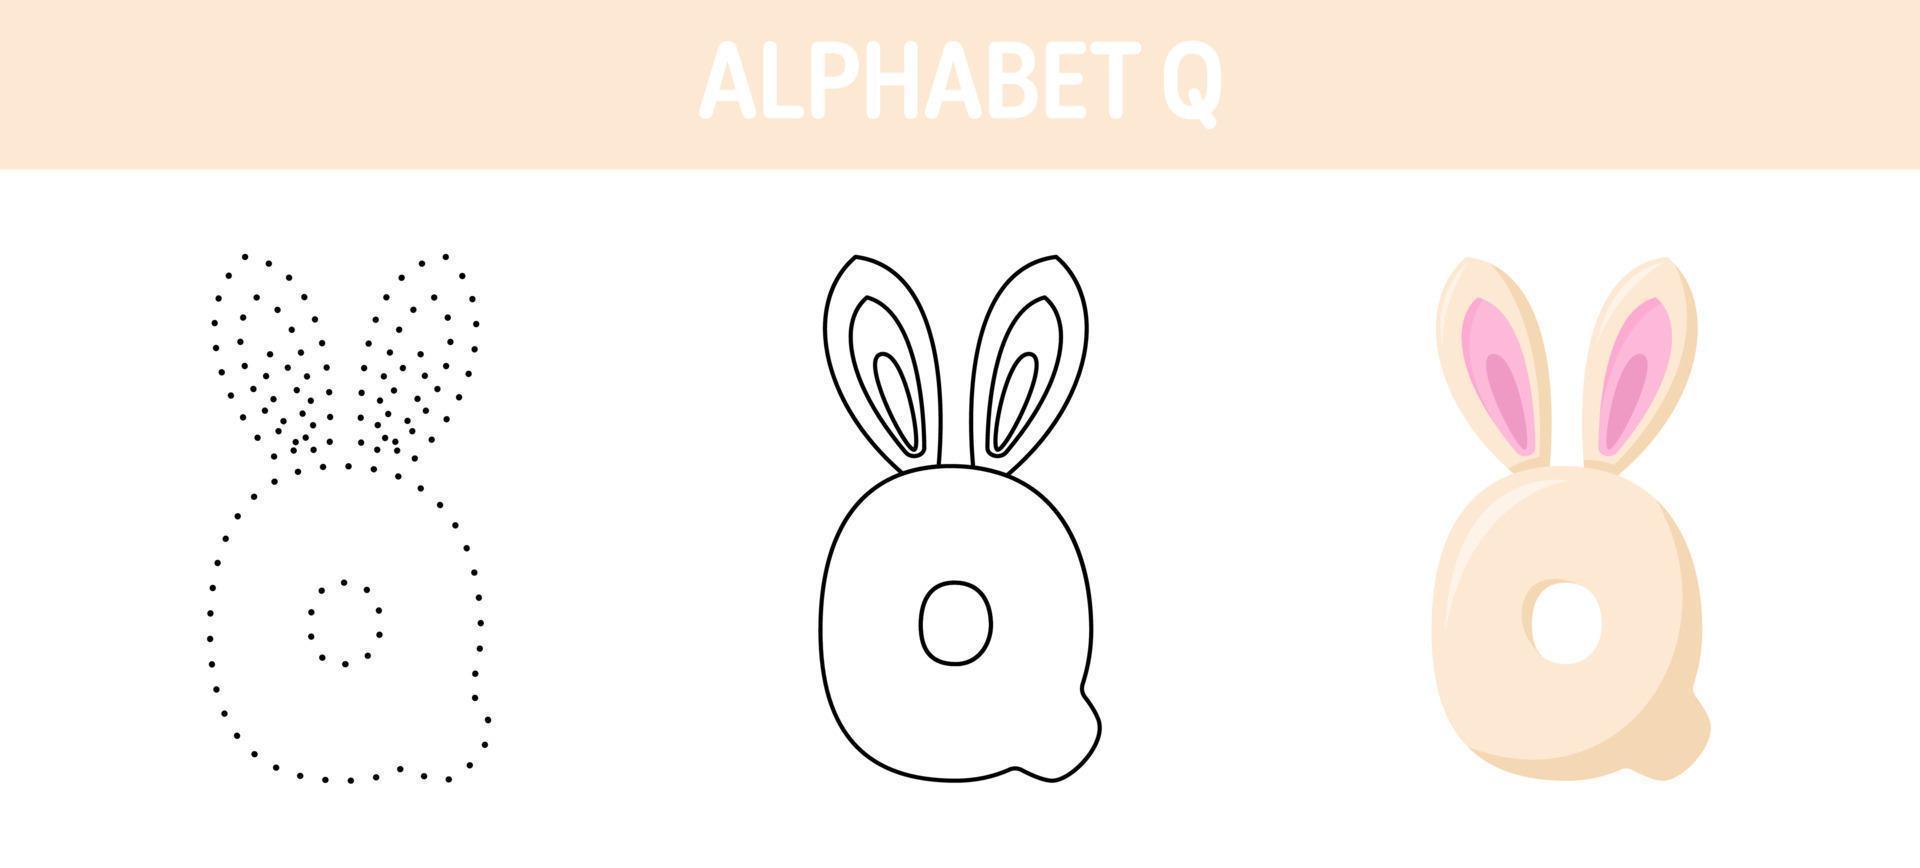 alfabet q traceren en kleur werkblad voor kinderen vector